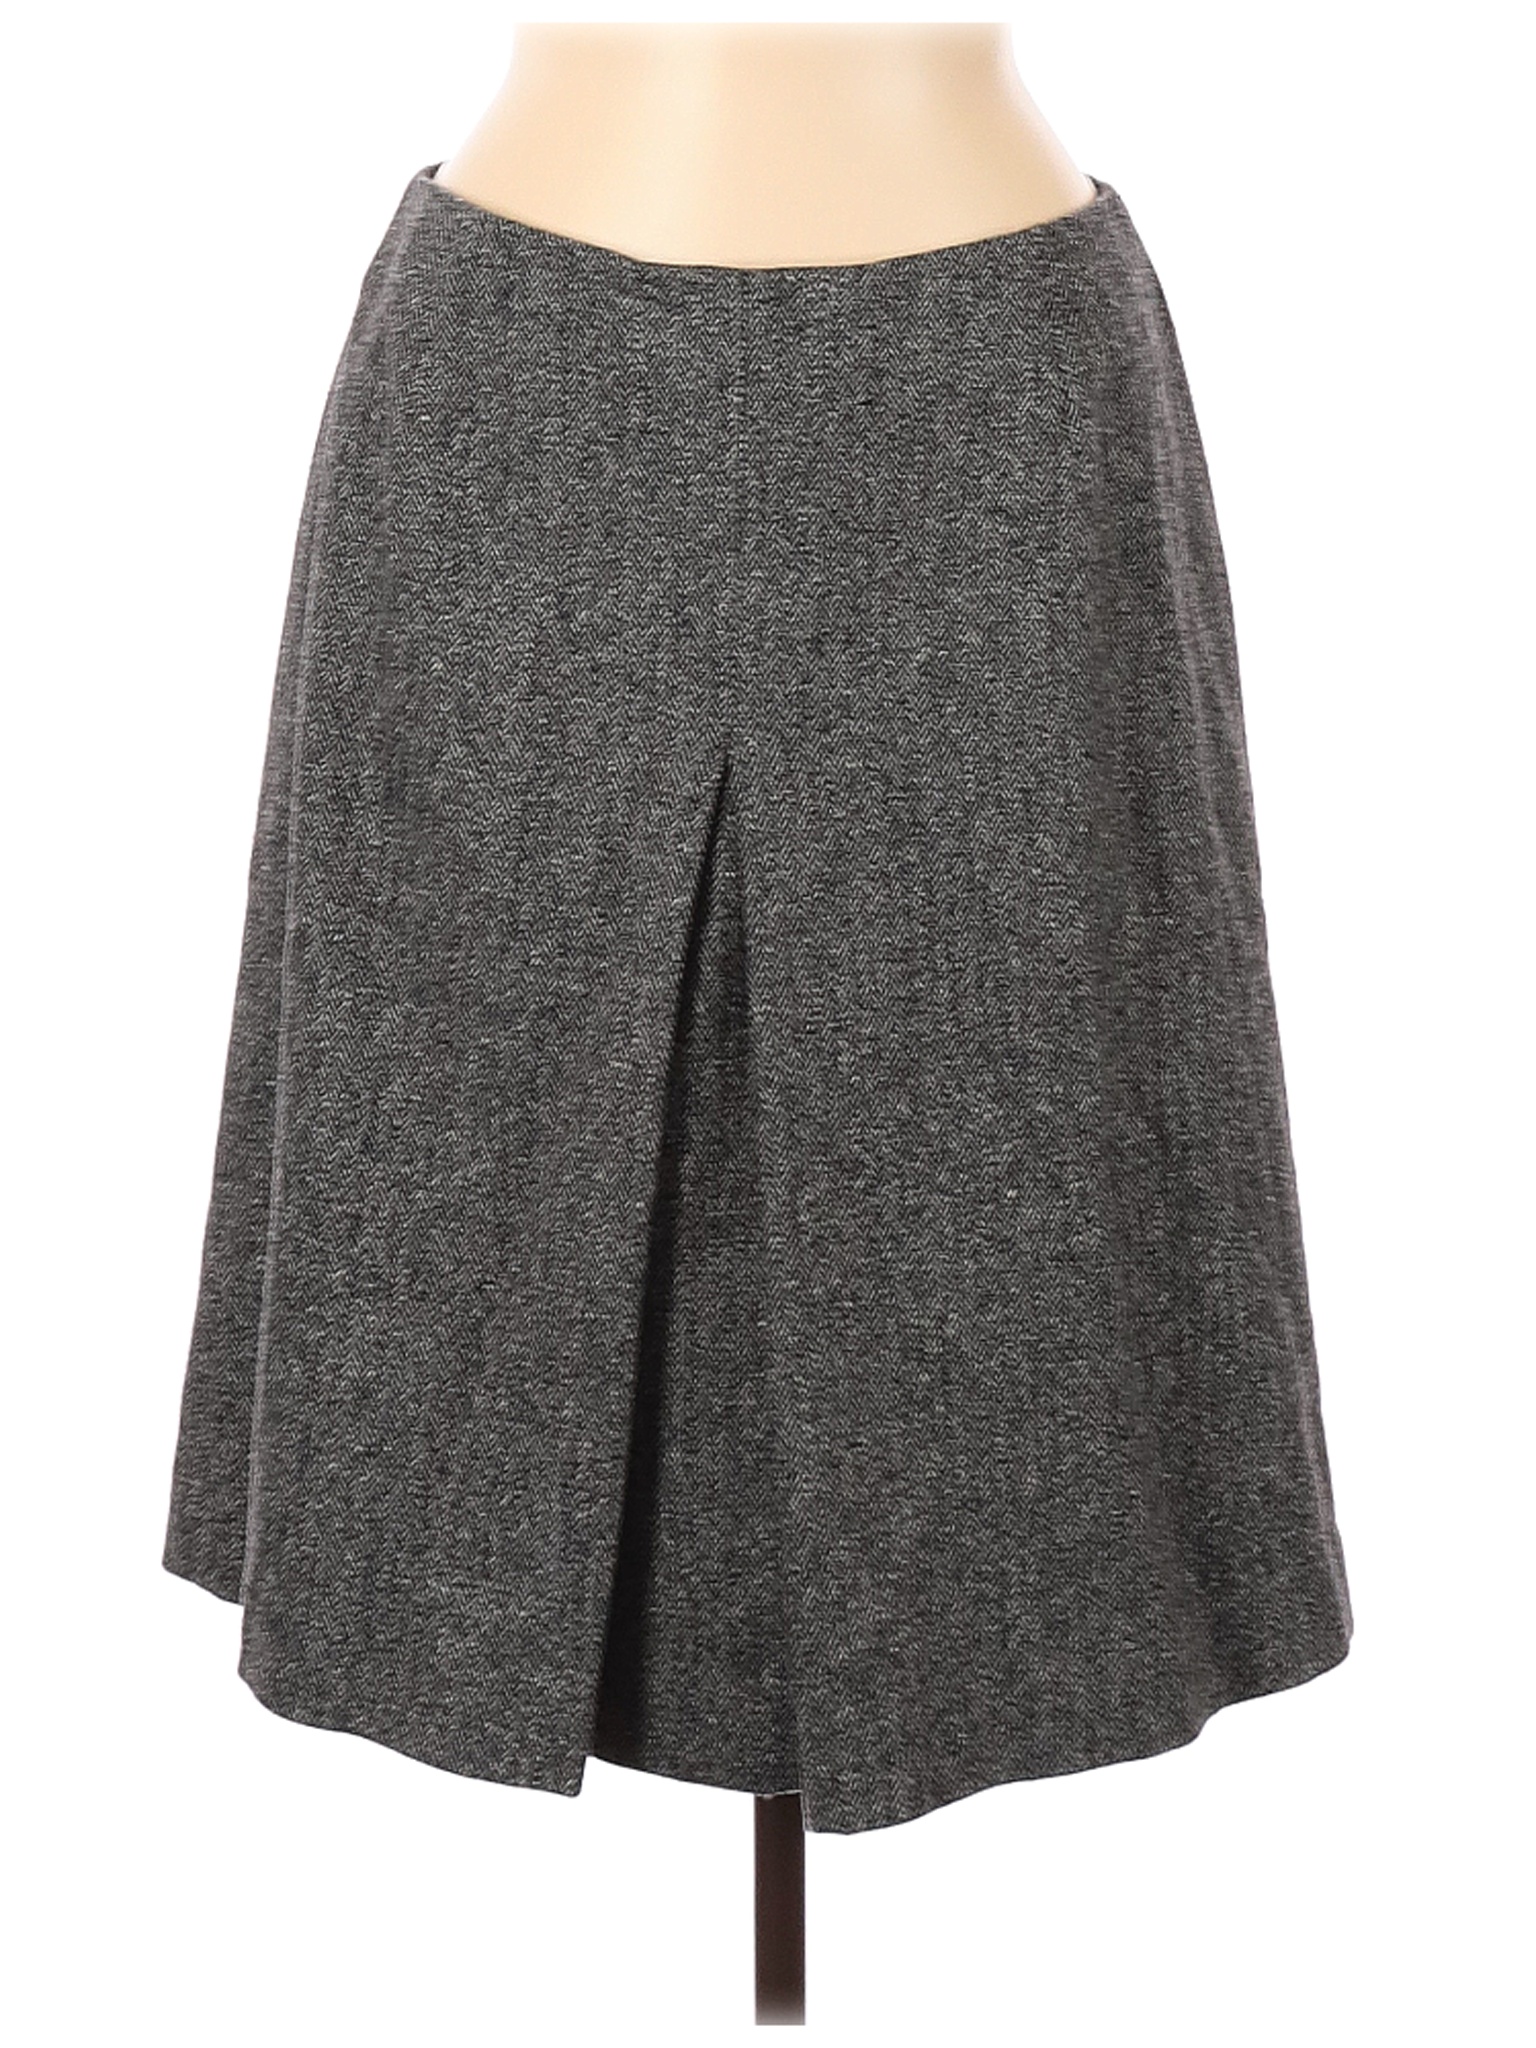 Eddie Bauer Women Gray Wool Skirt 10 | eBay